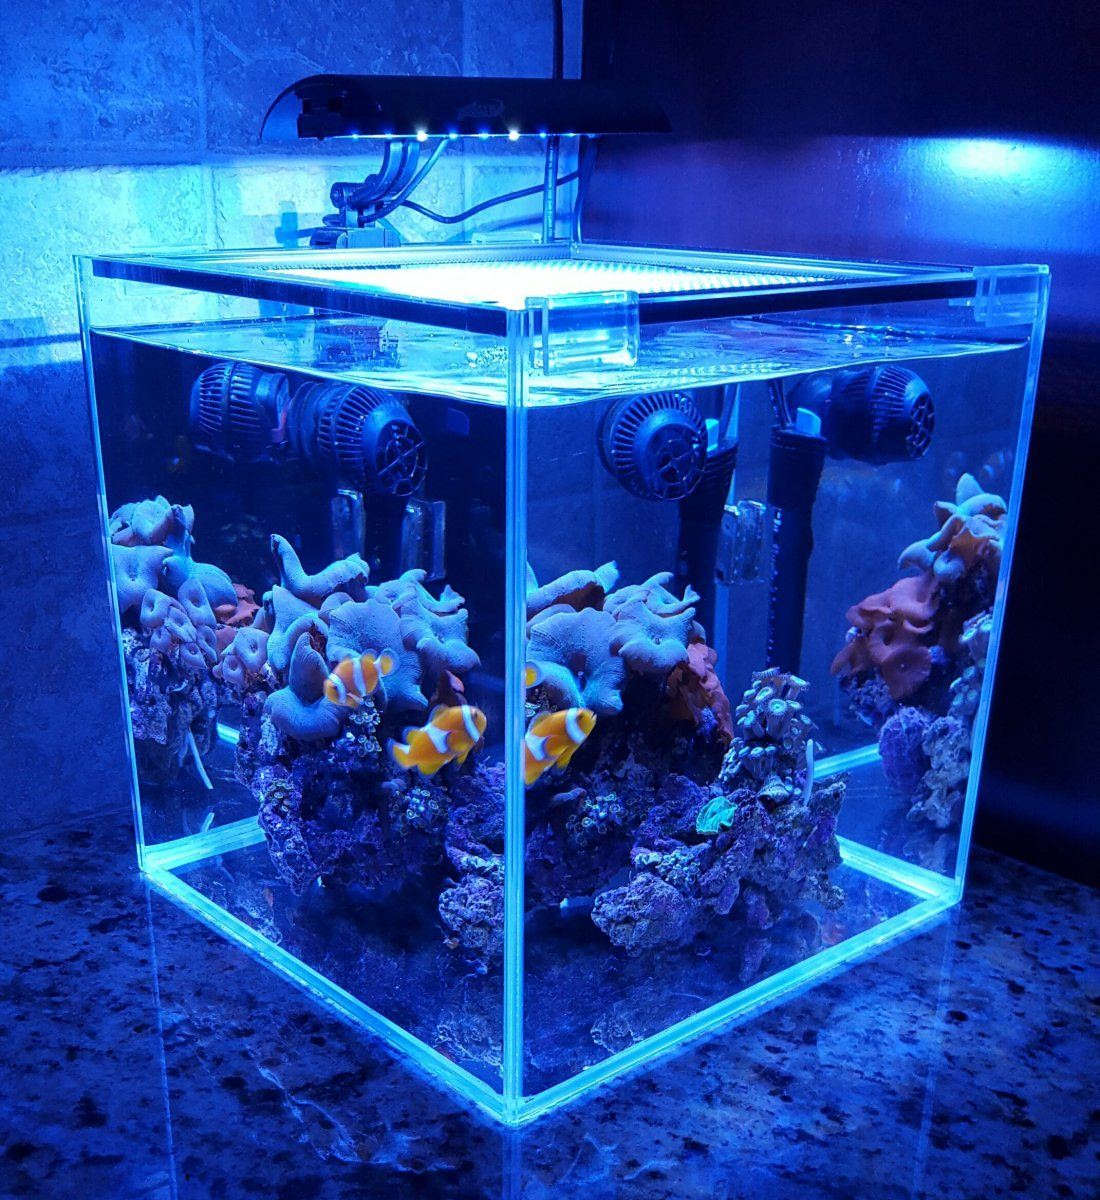 аквариум 30 литров куб оформление